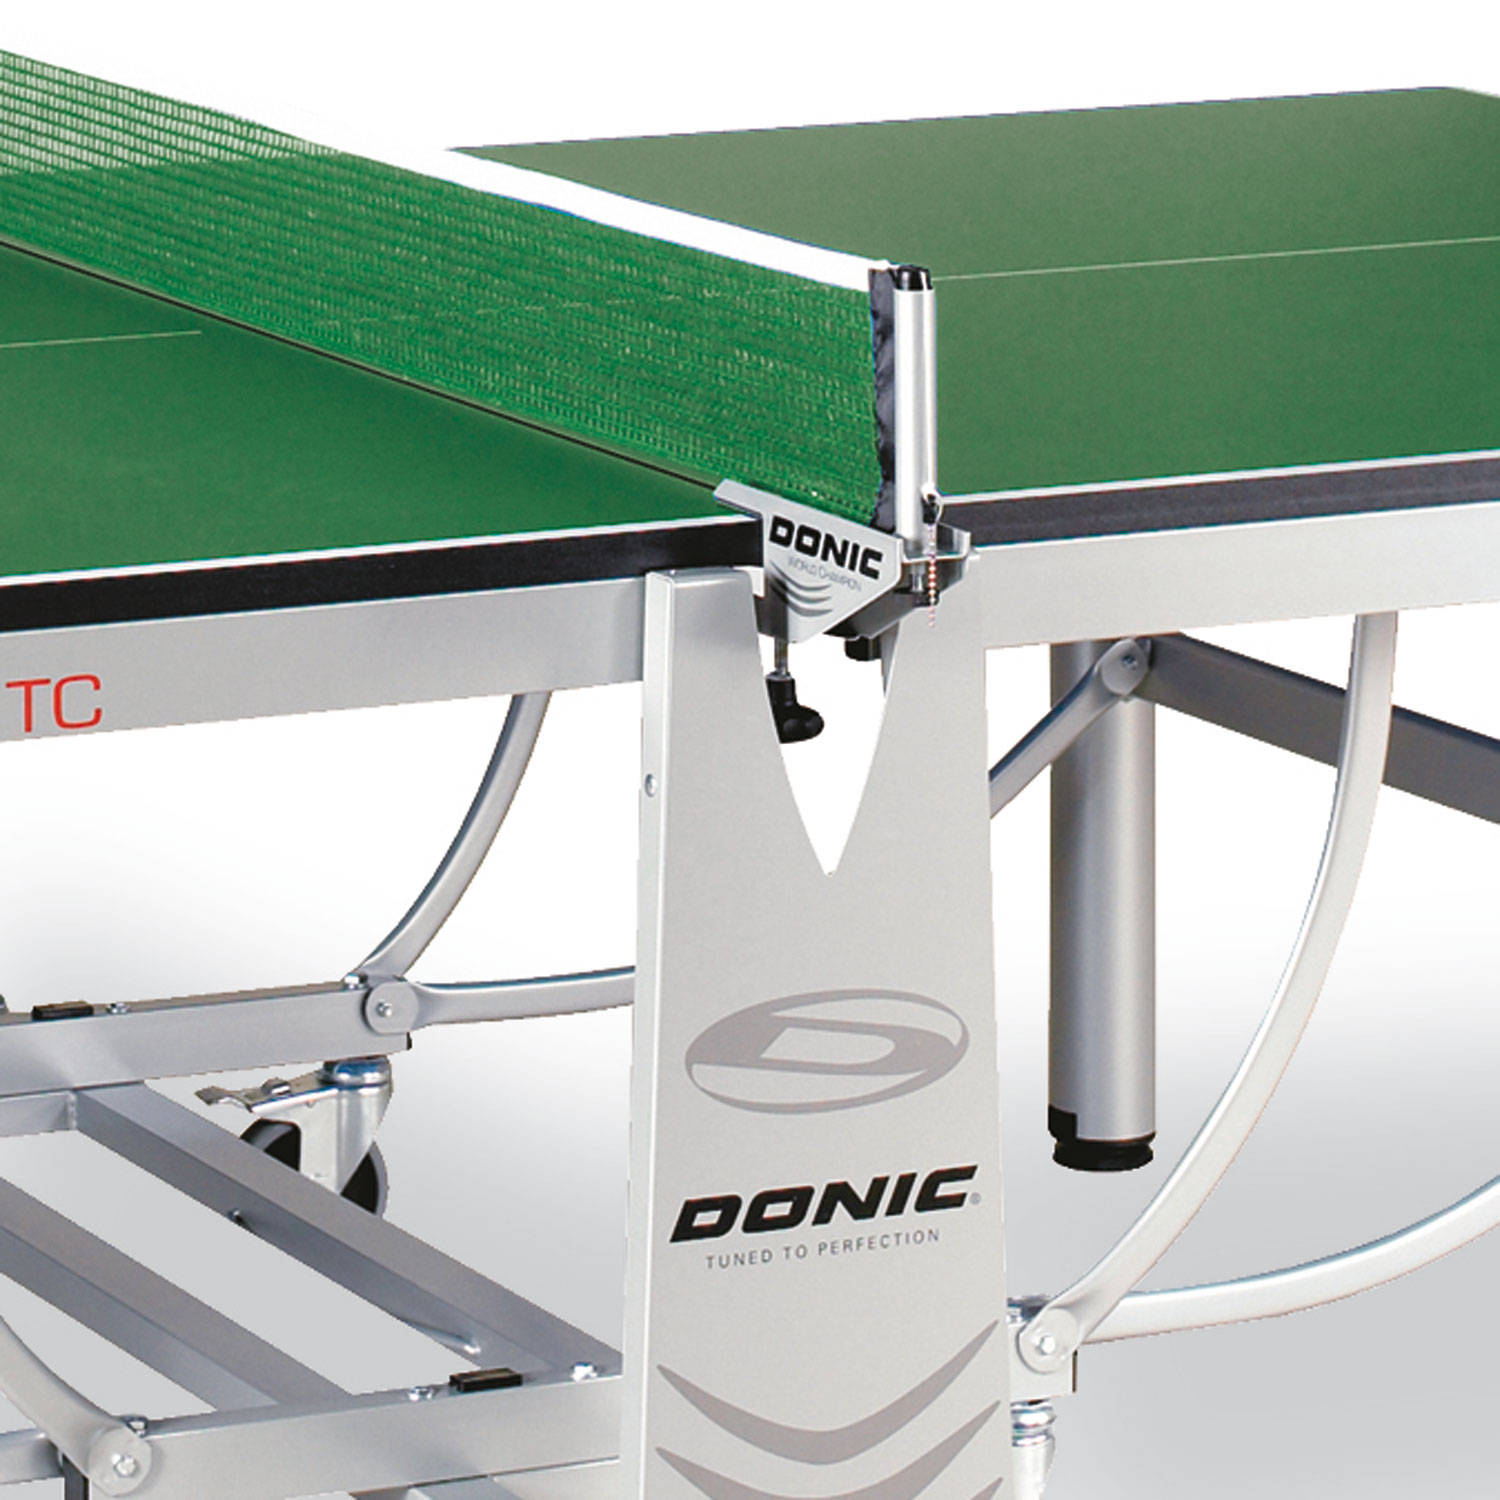 Теннисный стол Donic WORLD CHAMPION TC зеленый (без сетки), изображение 2